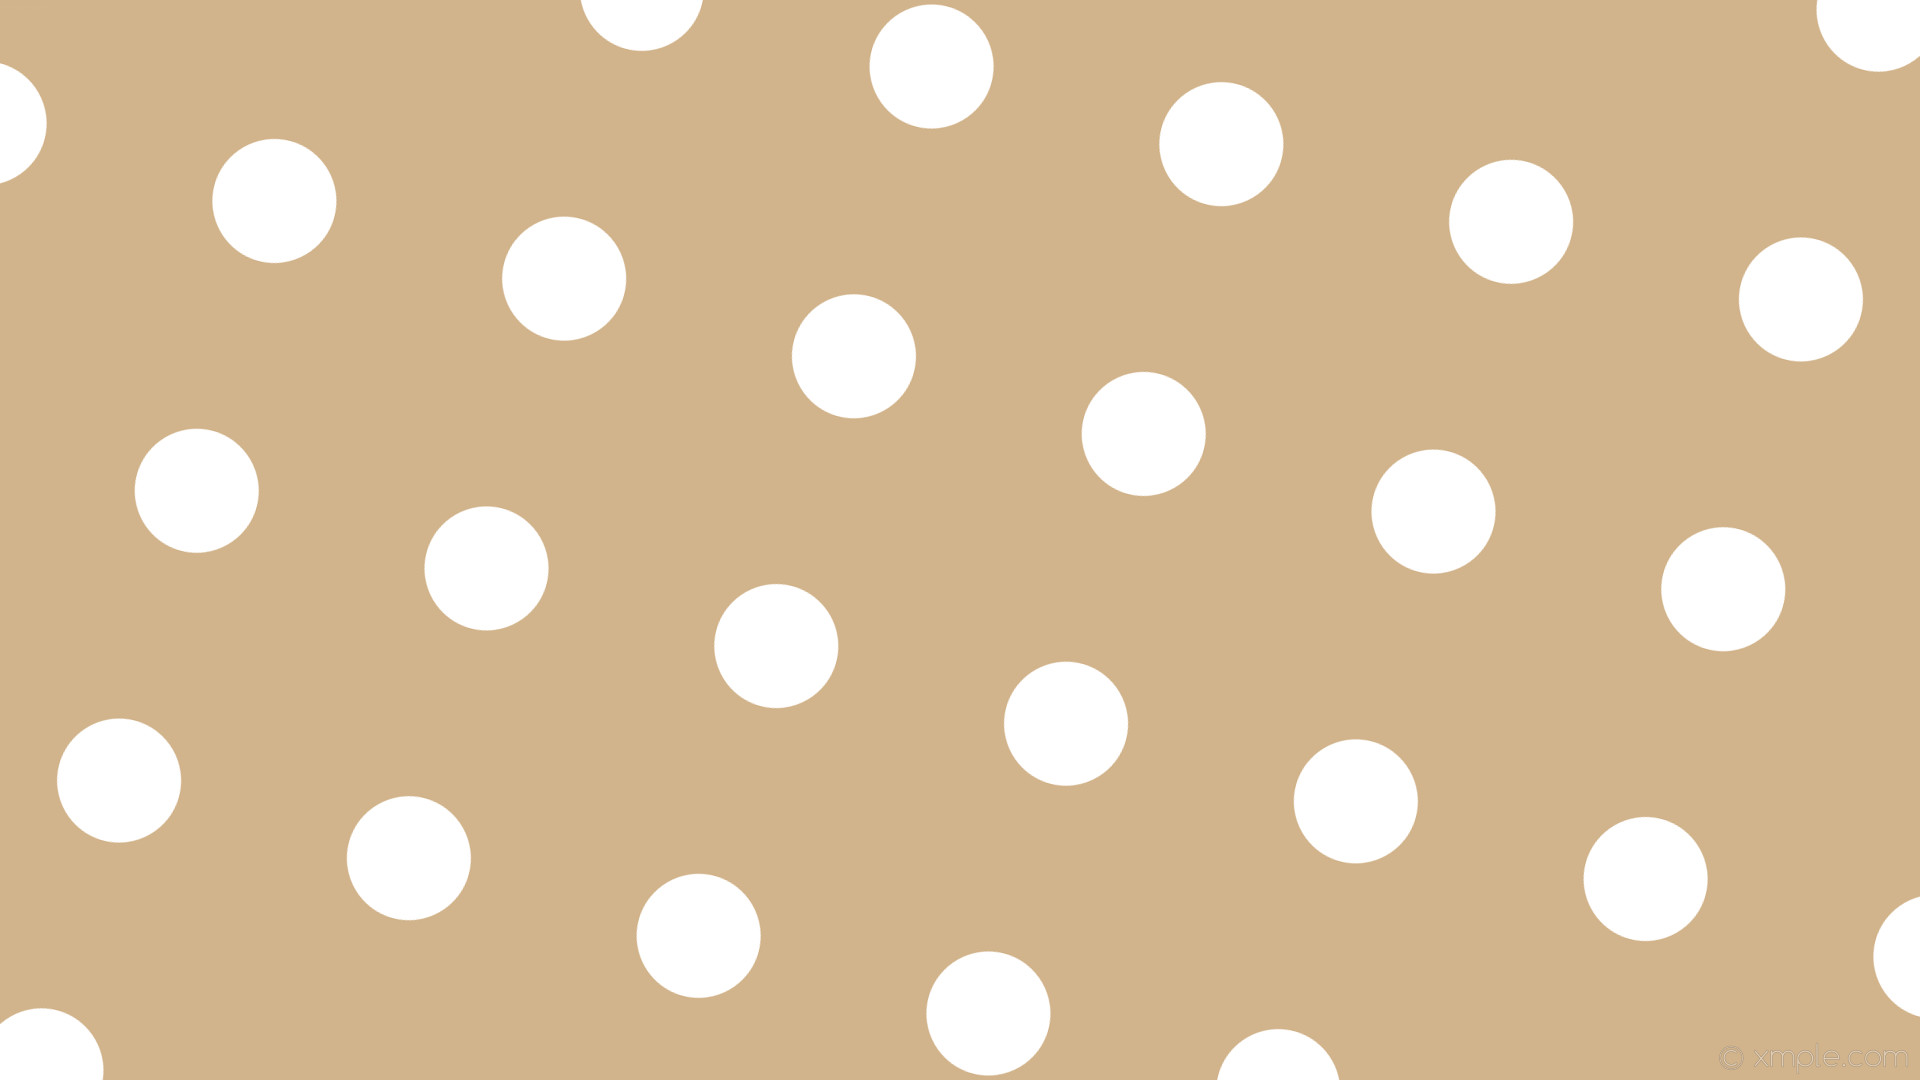 1920x1080 wallpaper brown spots dots white polka tan #d2b48c #ffffff 165Â° 124px 300px